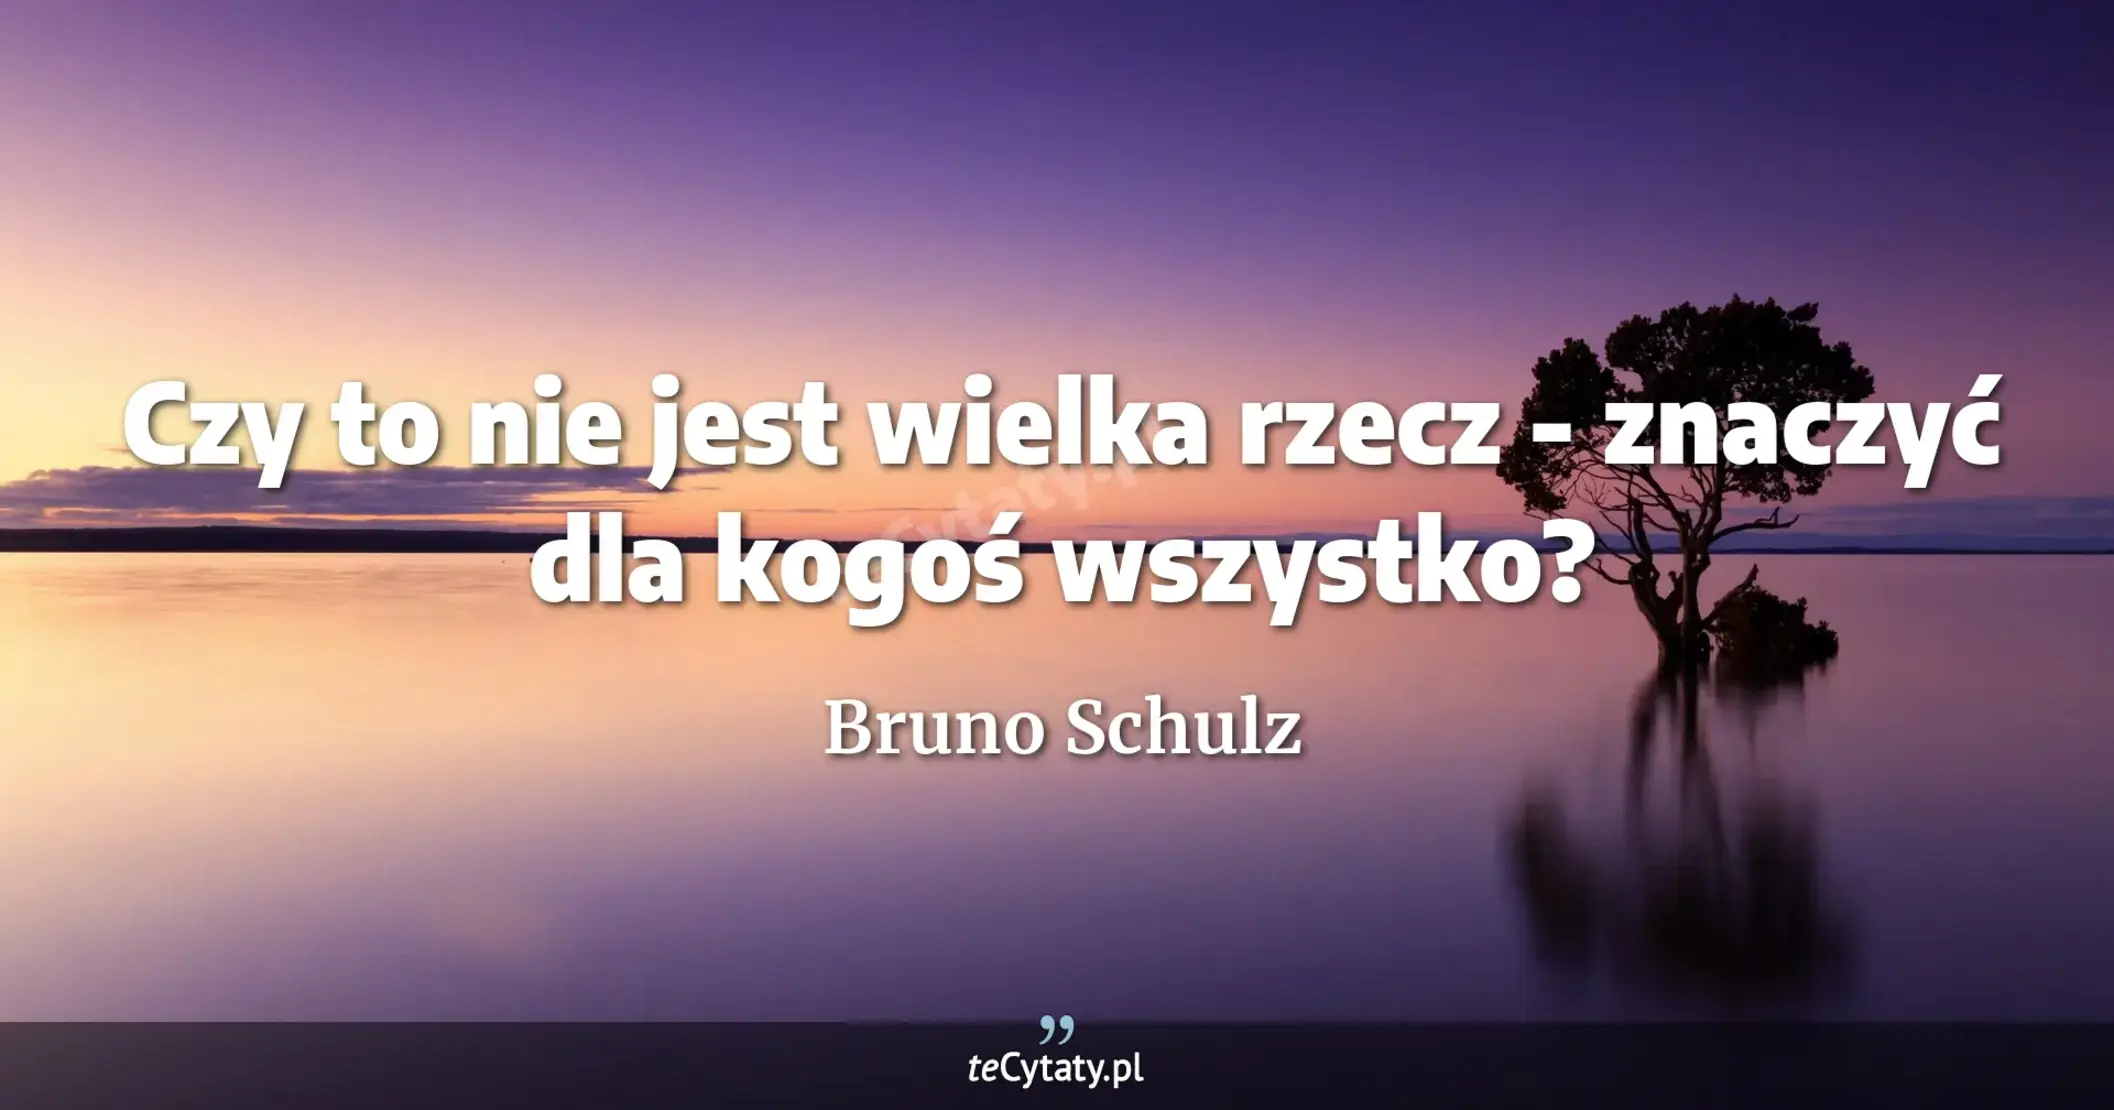 Czy to nie jest wielka rzecz - znaczyć dla kogoś wszystko? - Bruno Schulz